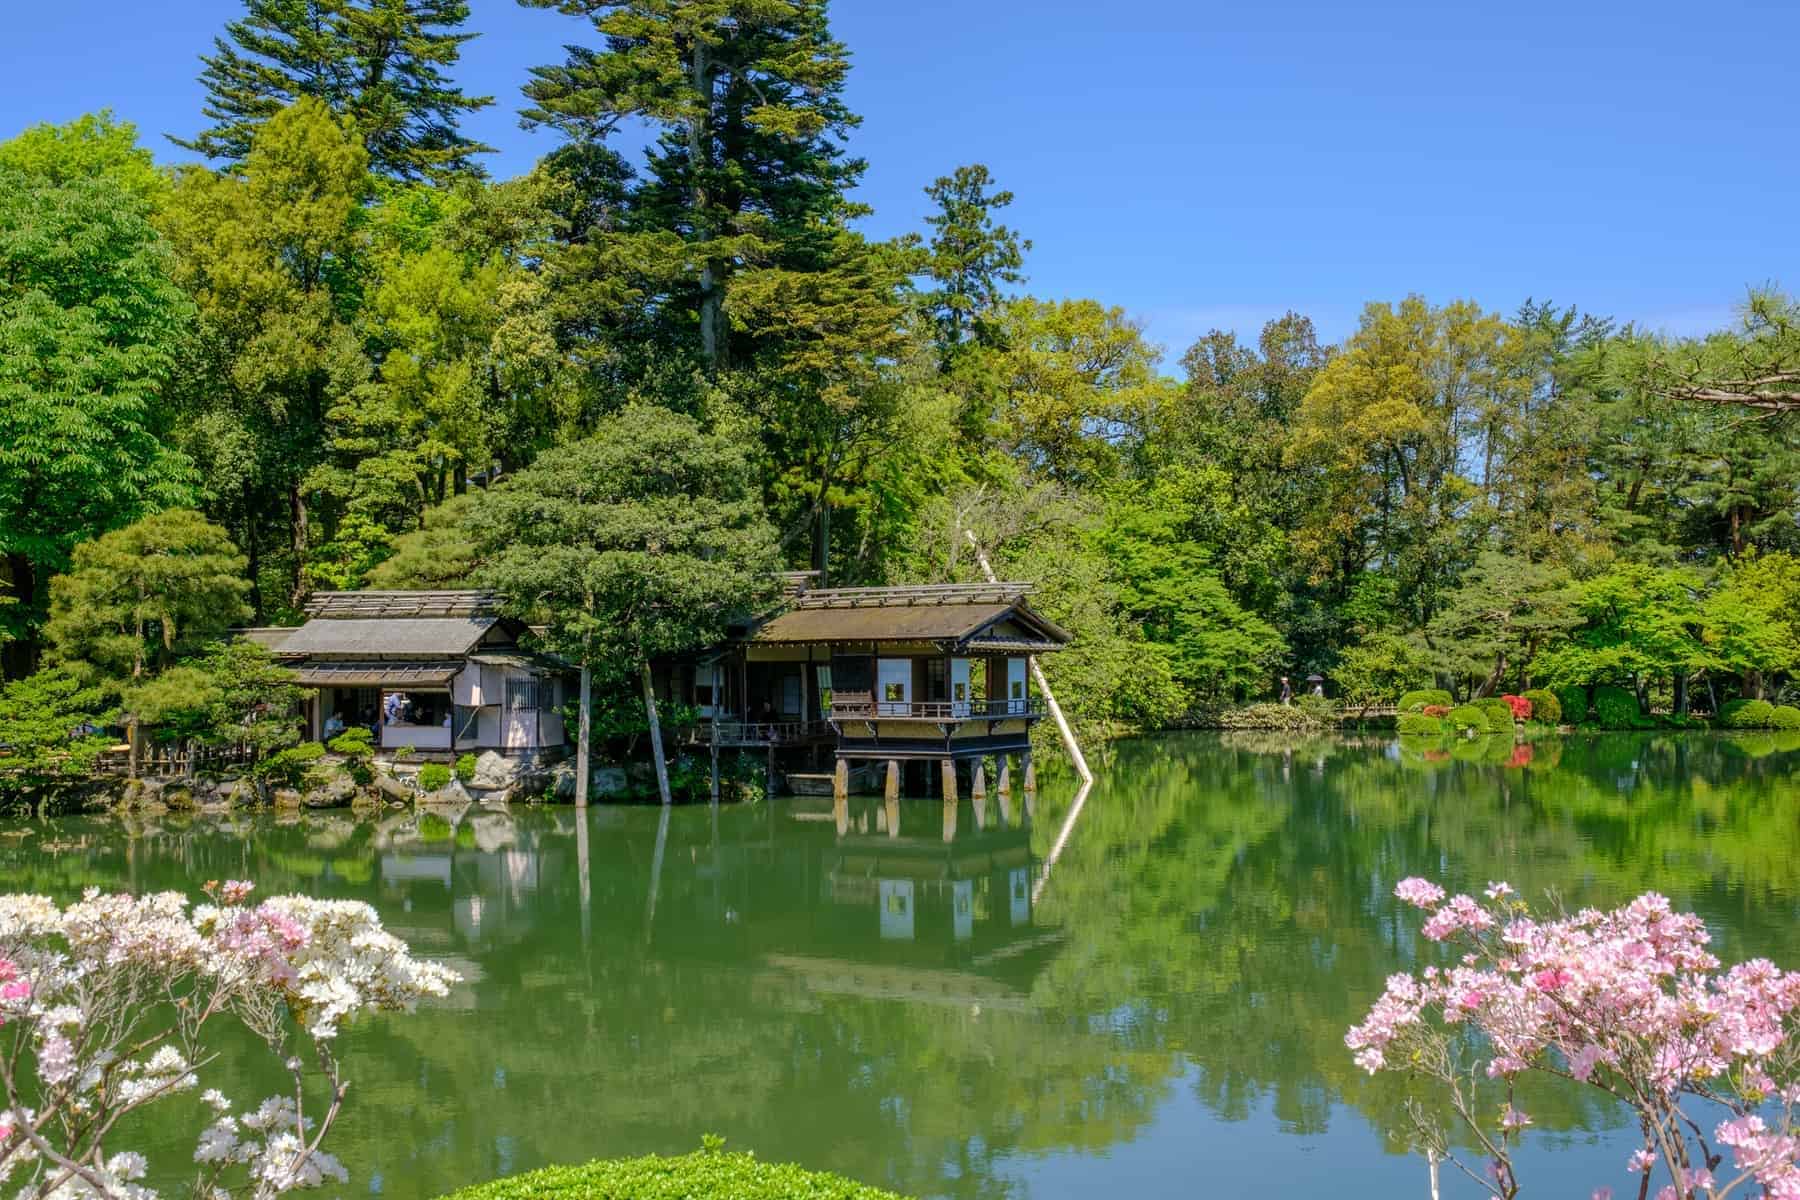 Pond and tea house in Kenrokuen, a japanese garden in Kanazawa, Ishikawa prefecture, Japan